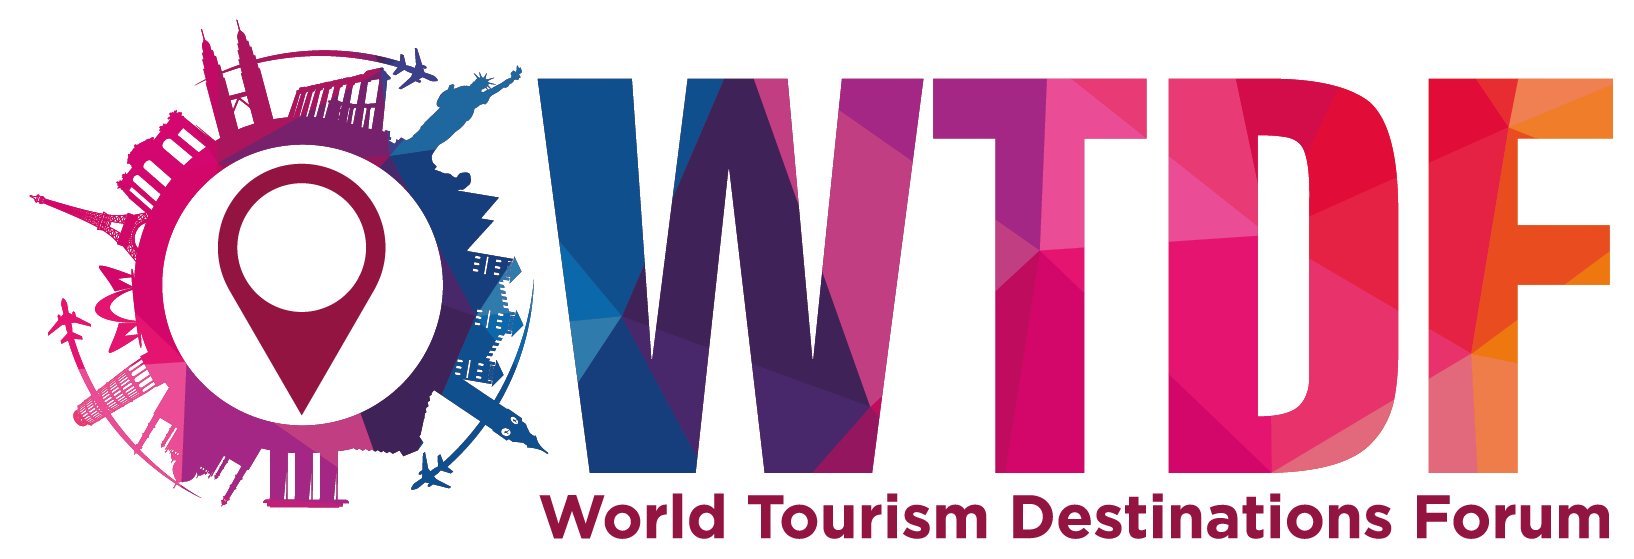 World Tourism Destinations Forum 2018 (WTDF2018)